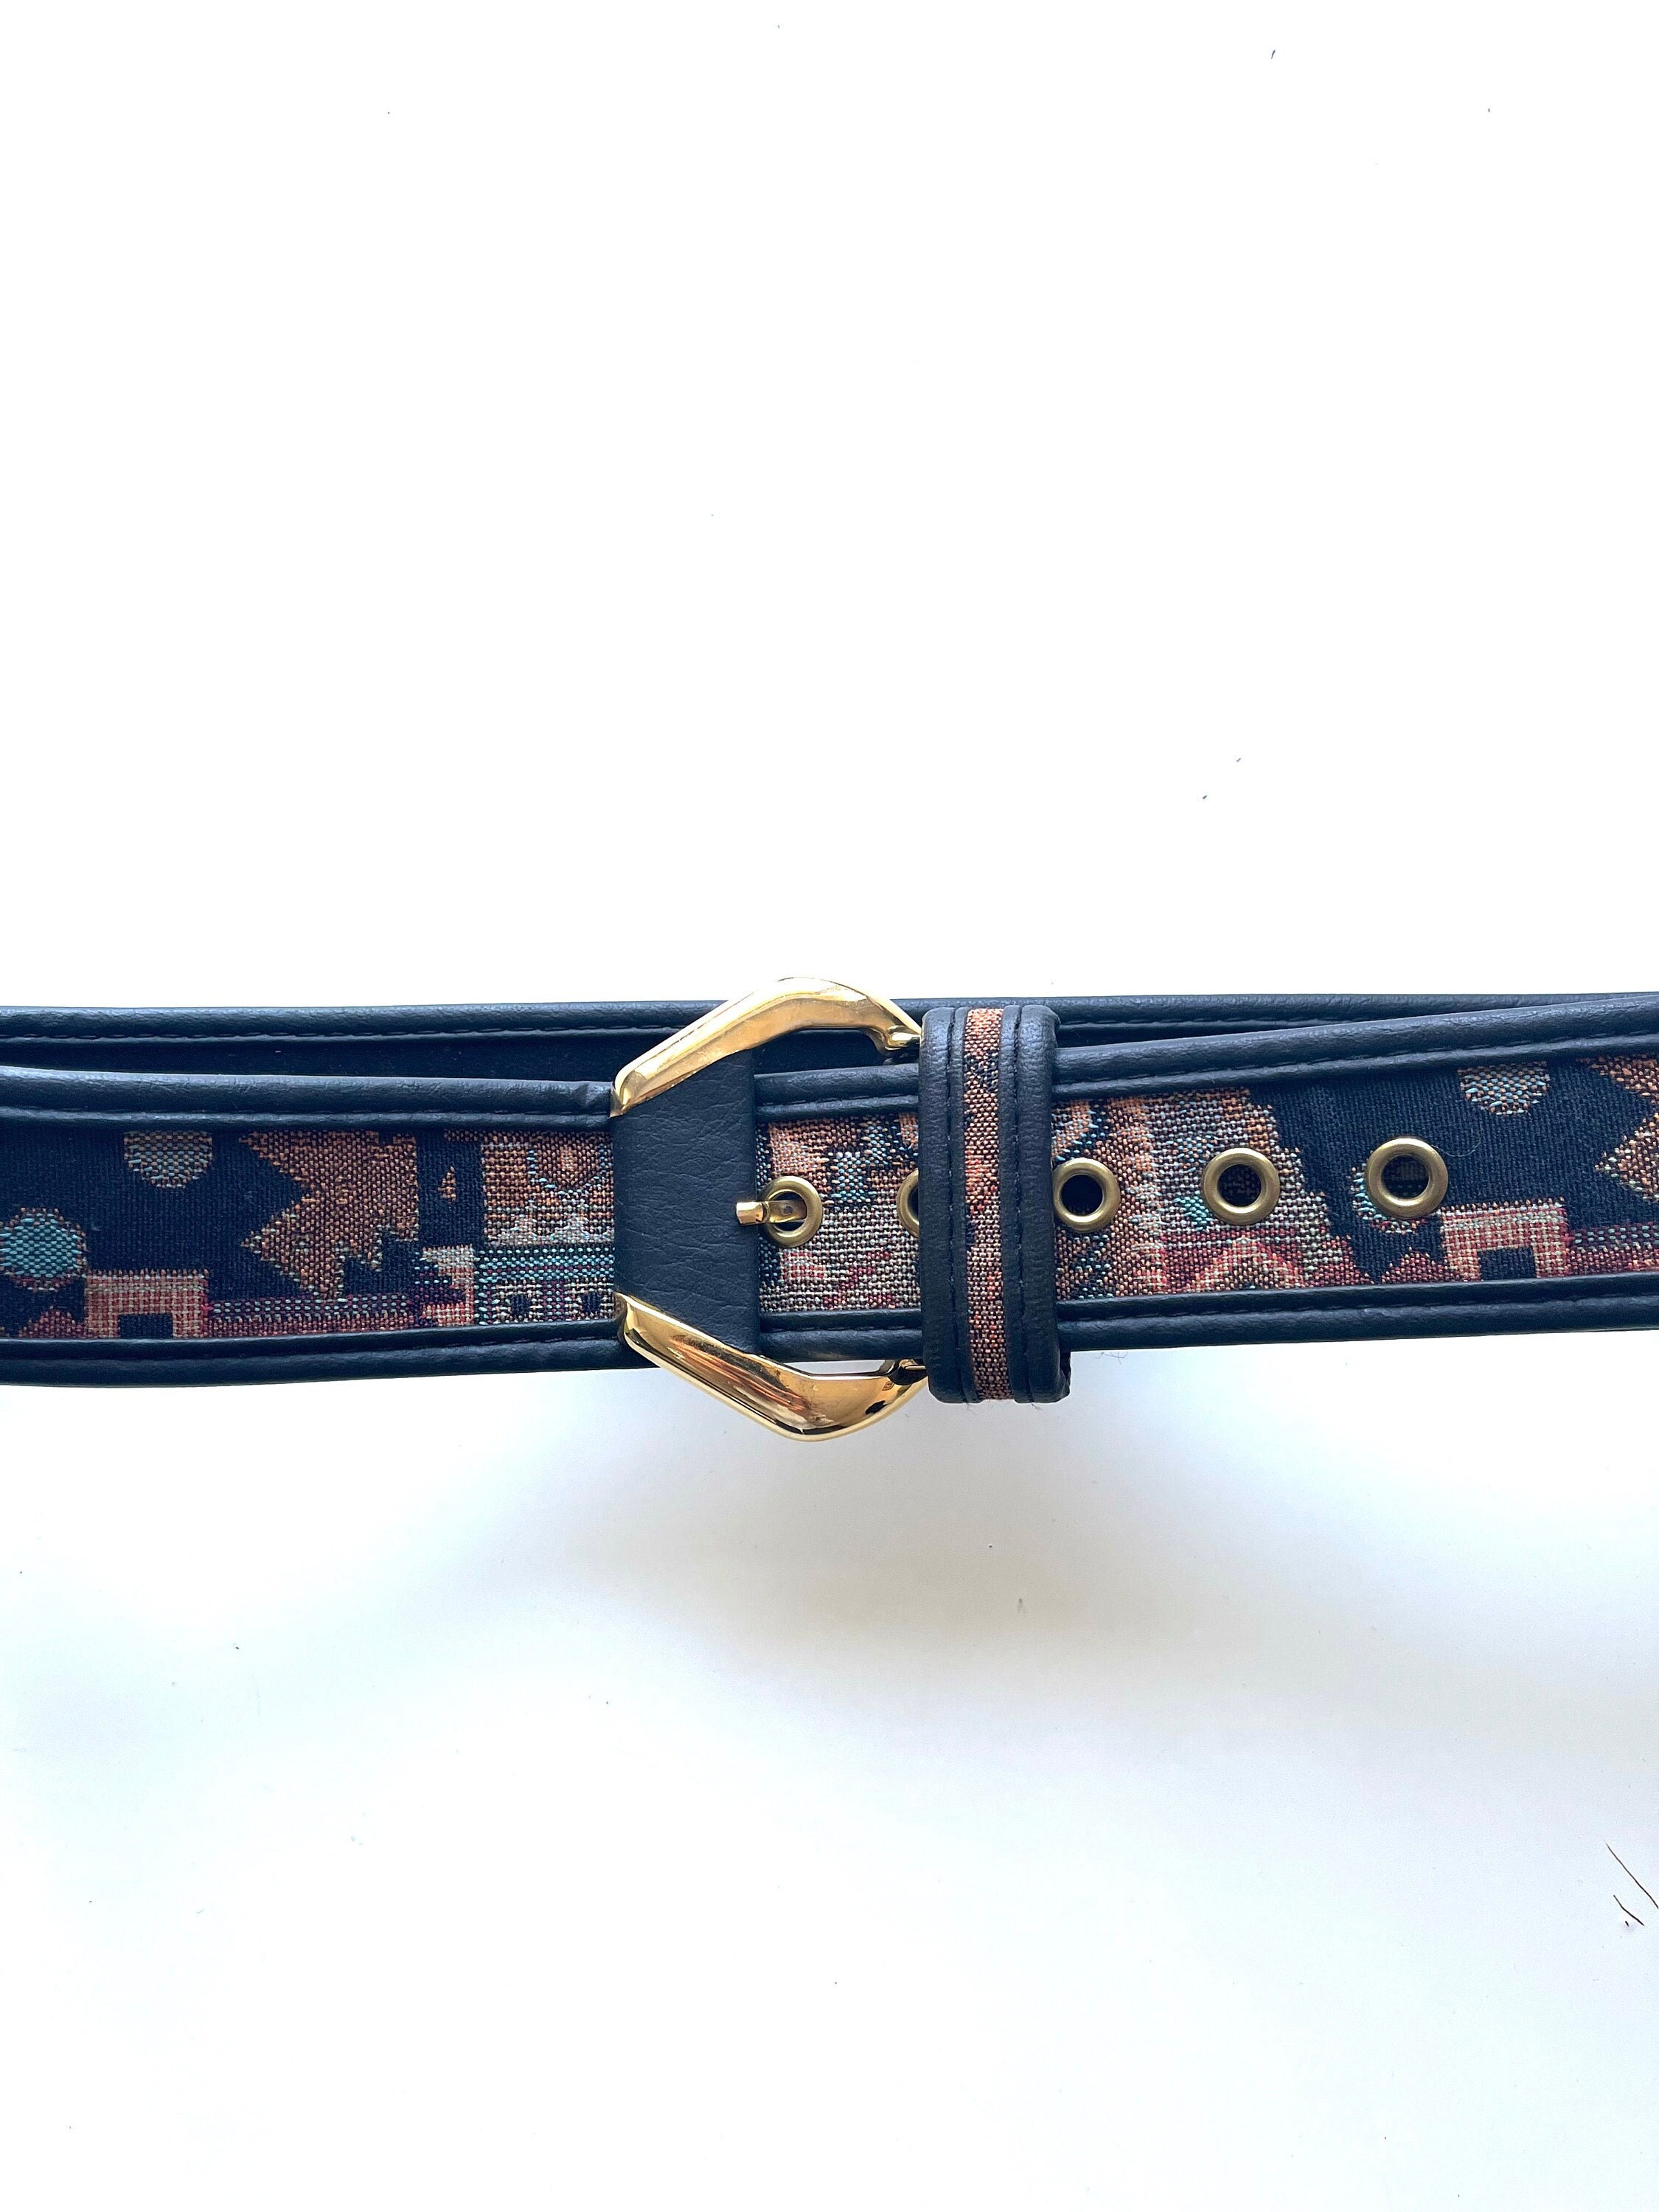 Authentic LOUIS VUITTON Tie The Knot 45mm Belt Black Leather